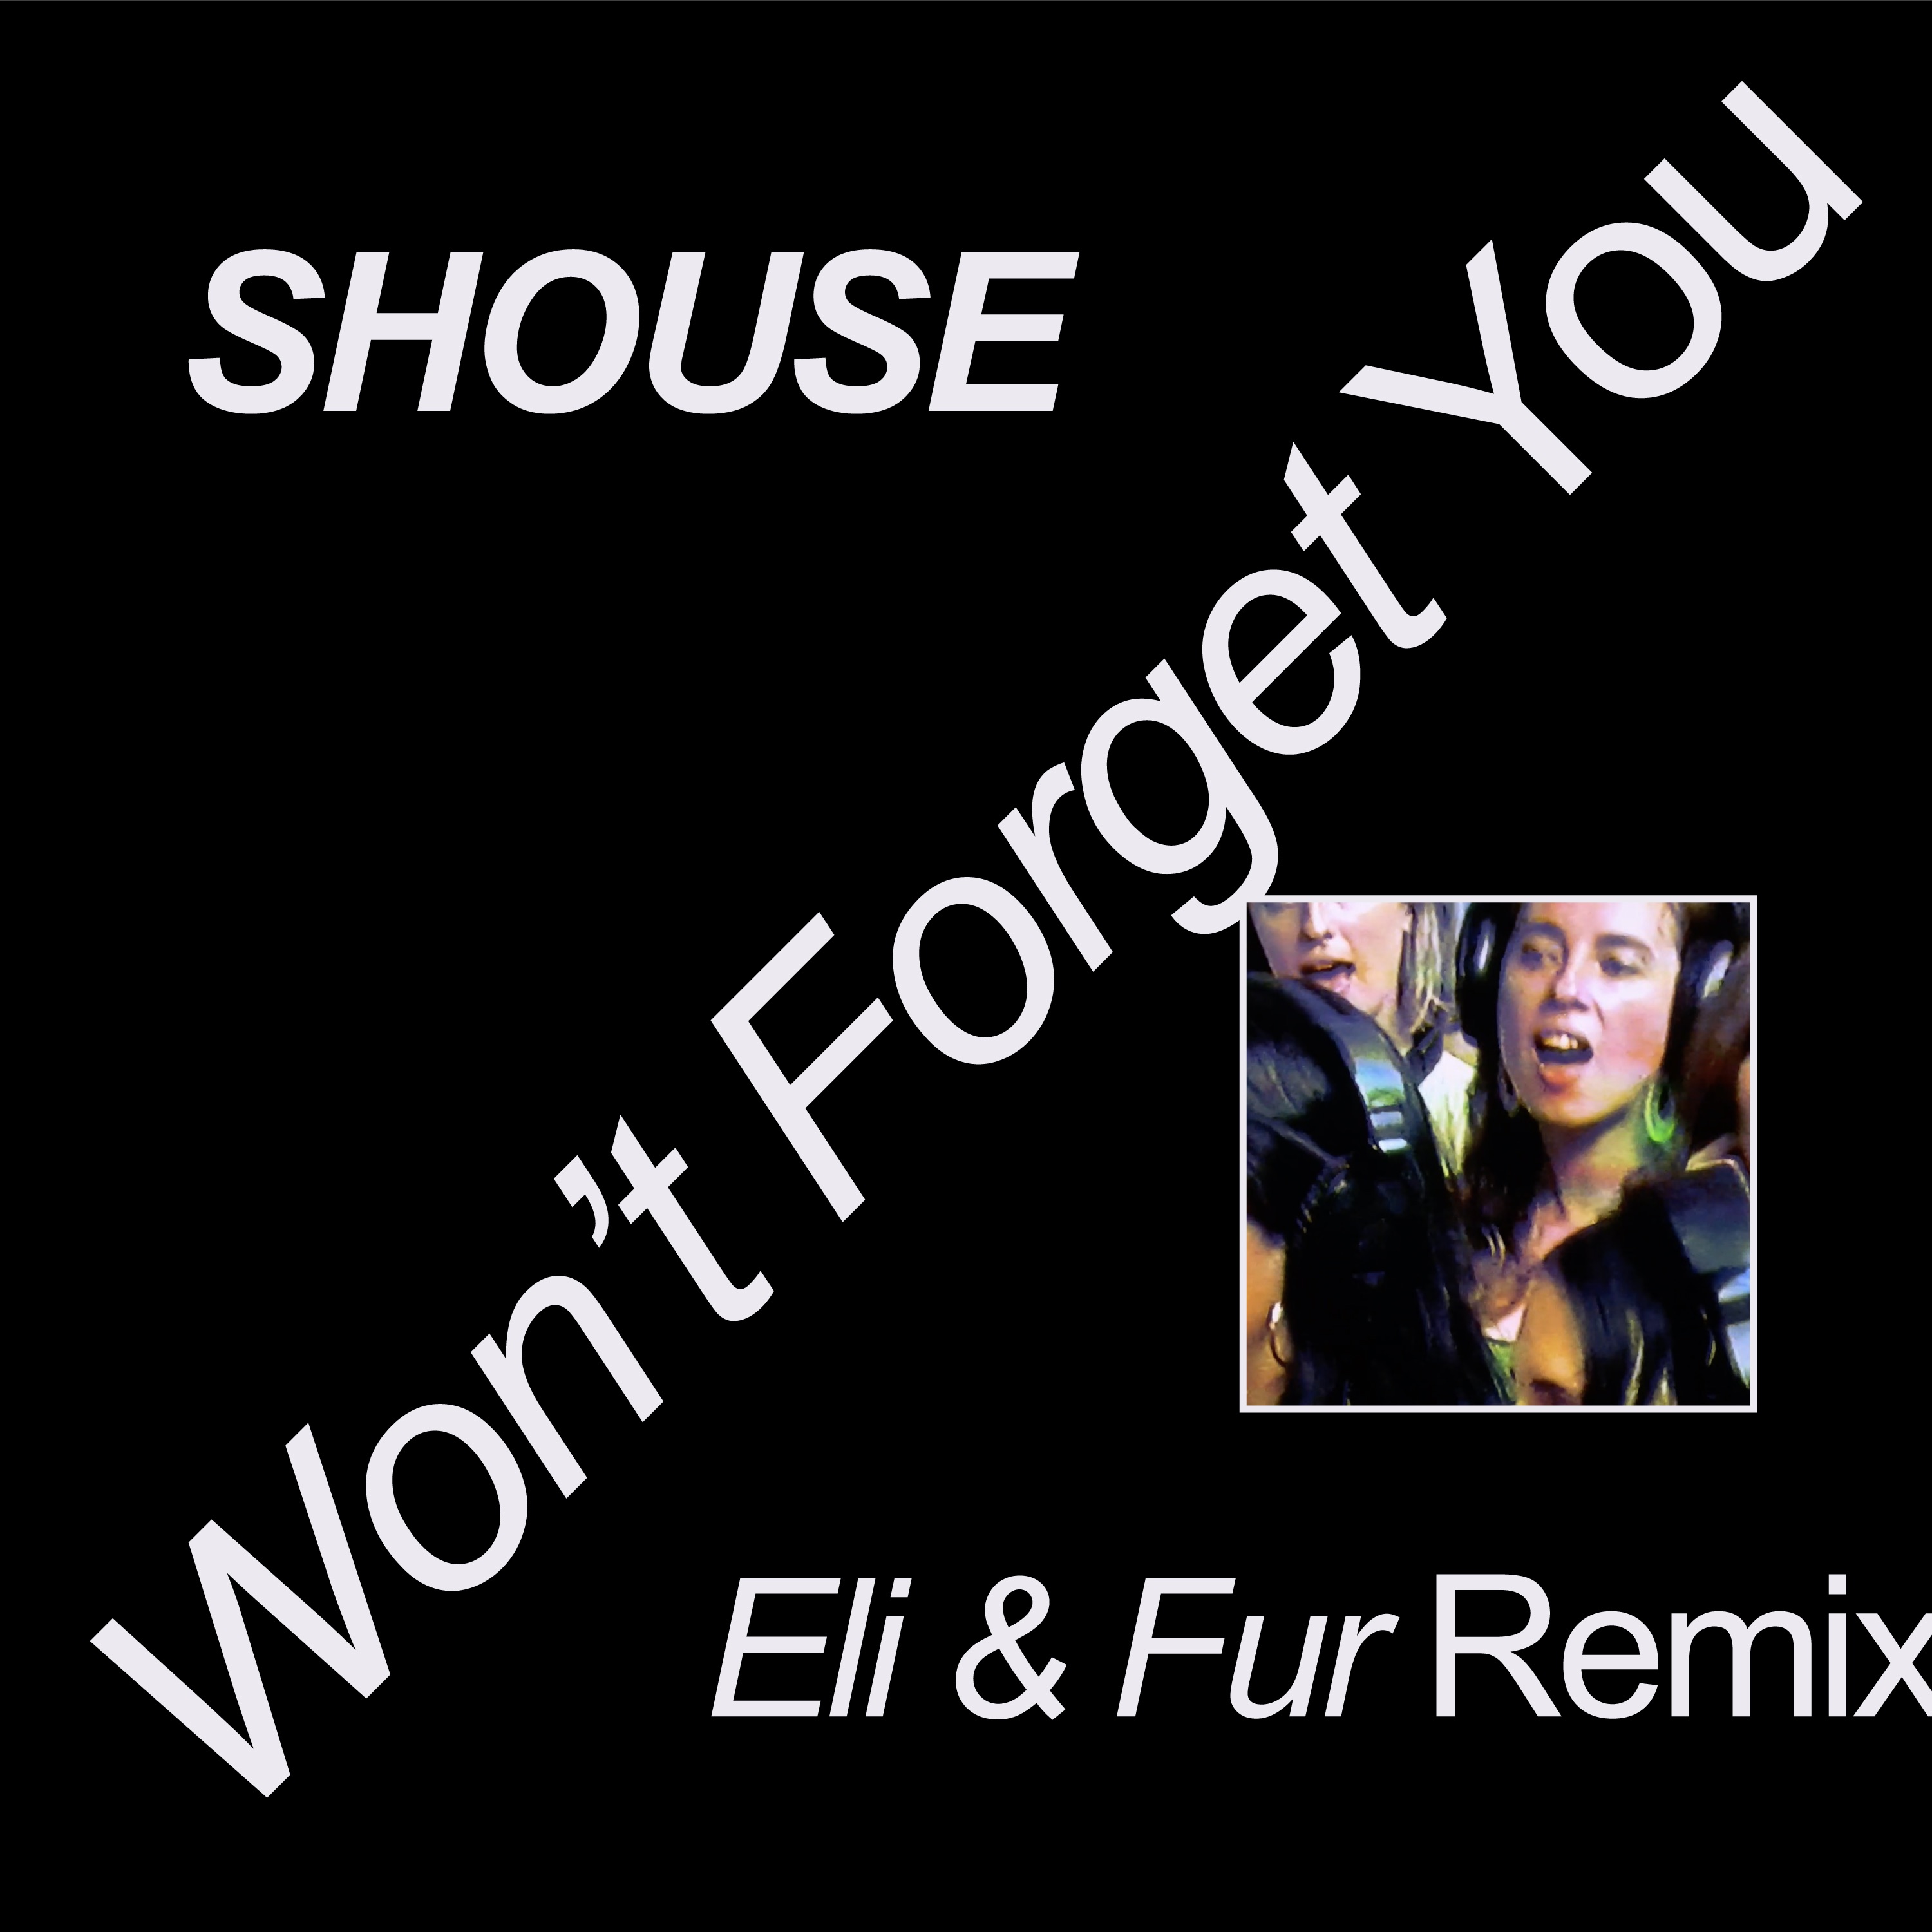 Download Shouse - Won't Forget You (Eli & Fur Remix)